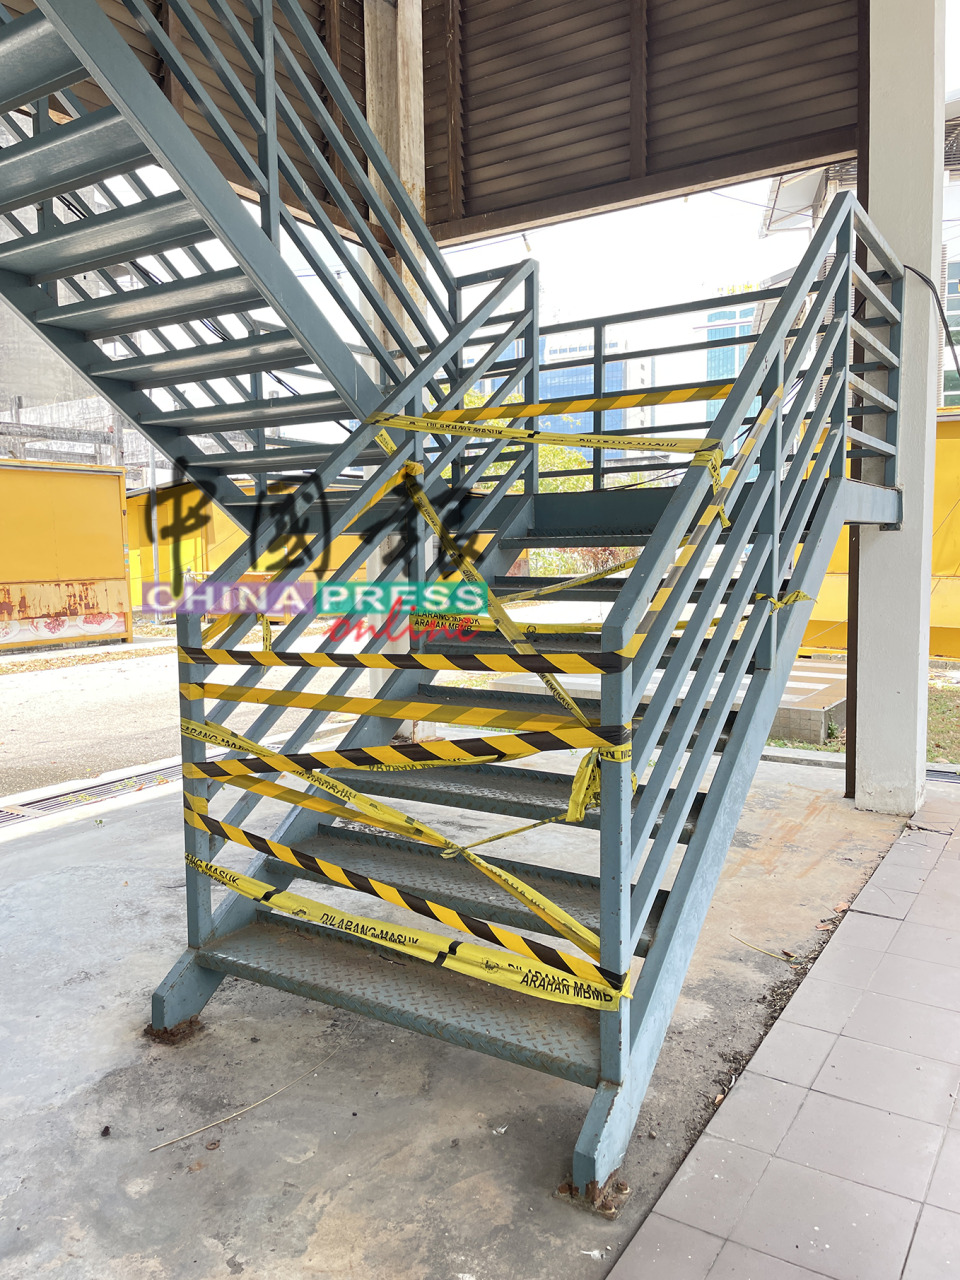 市政厅于敦阿里路马六甲单轨火车道楼梯间拉上黑黄警戒线，禁止民众入内，惟始终有民众擅闯。